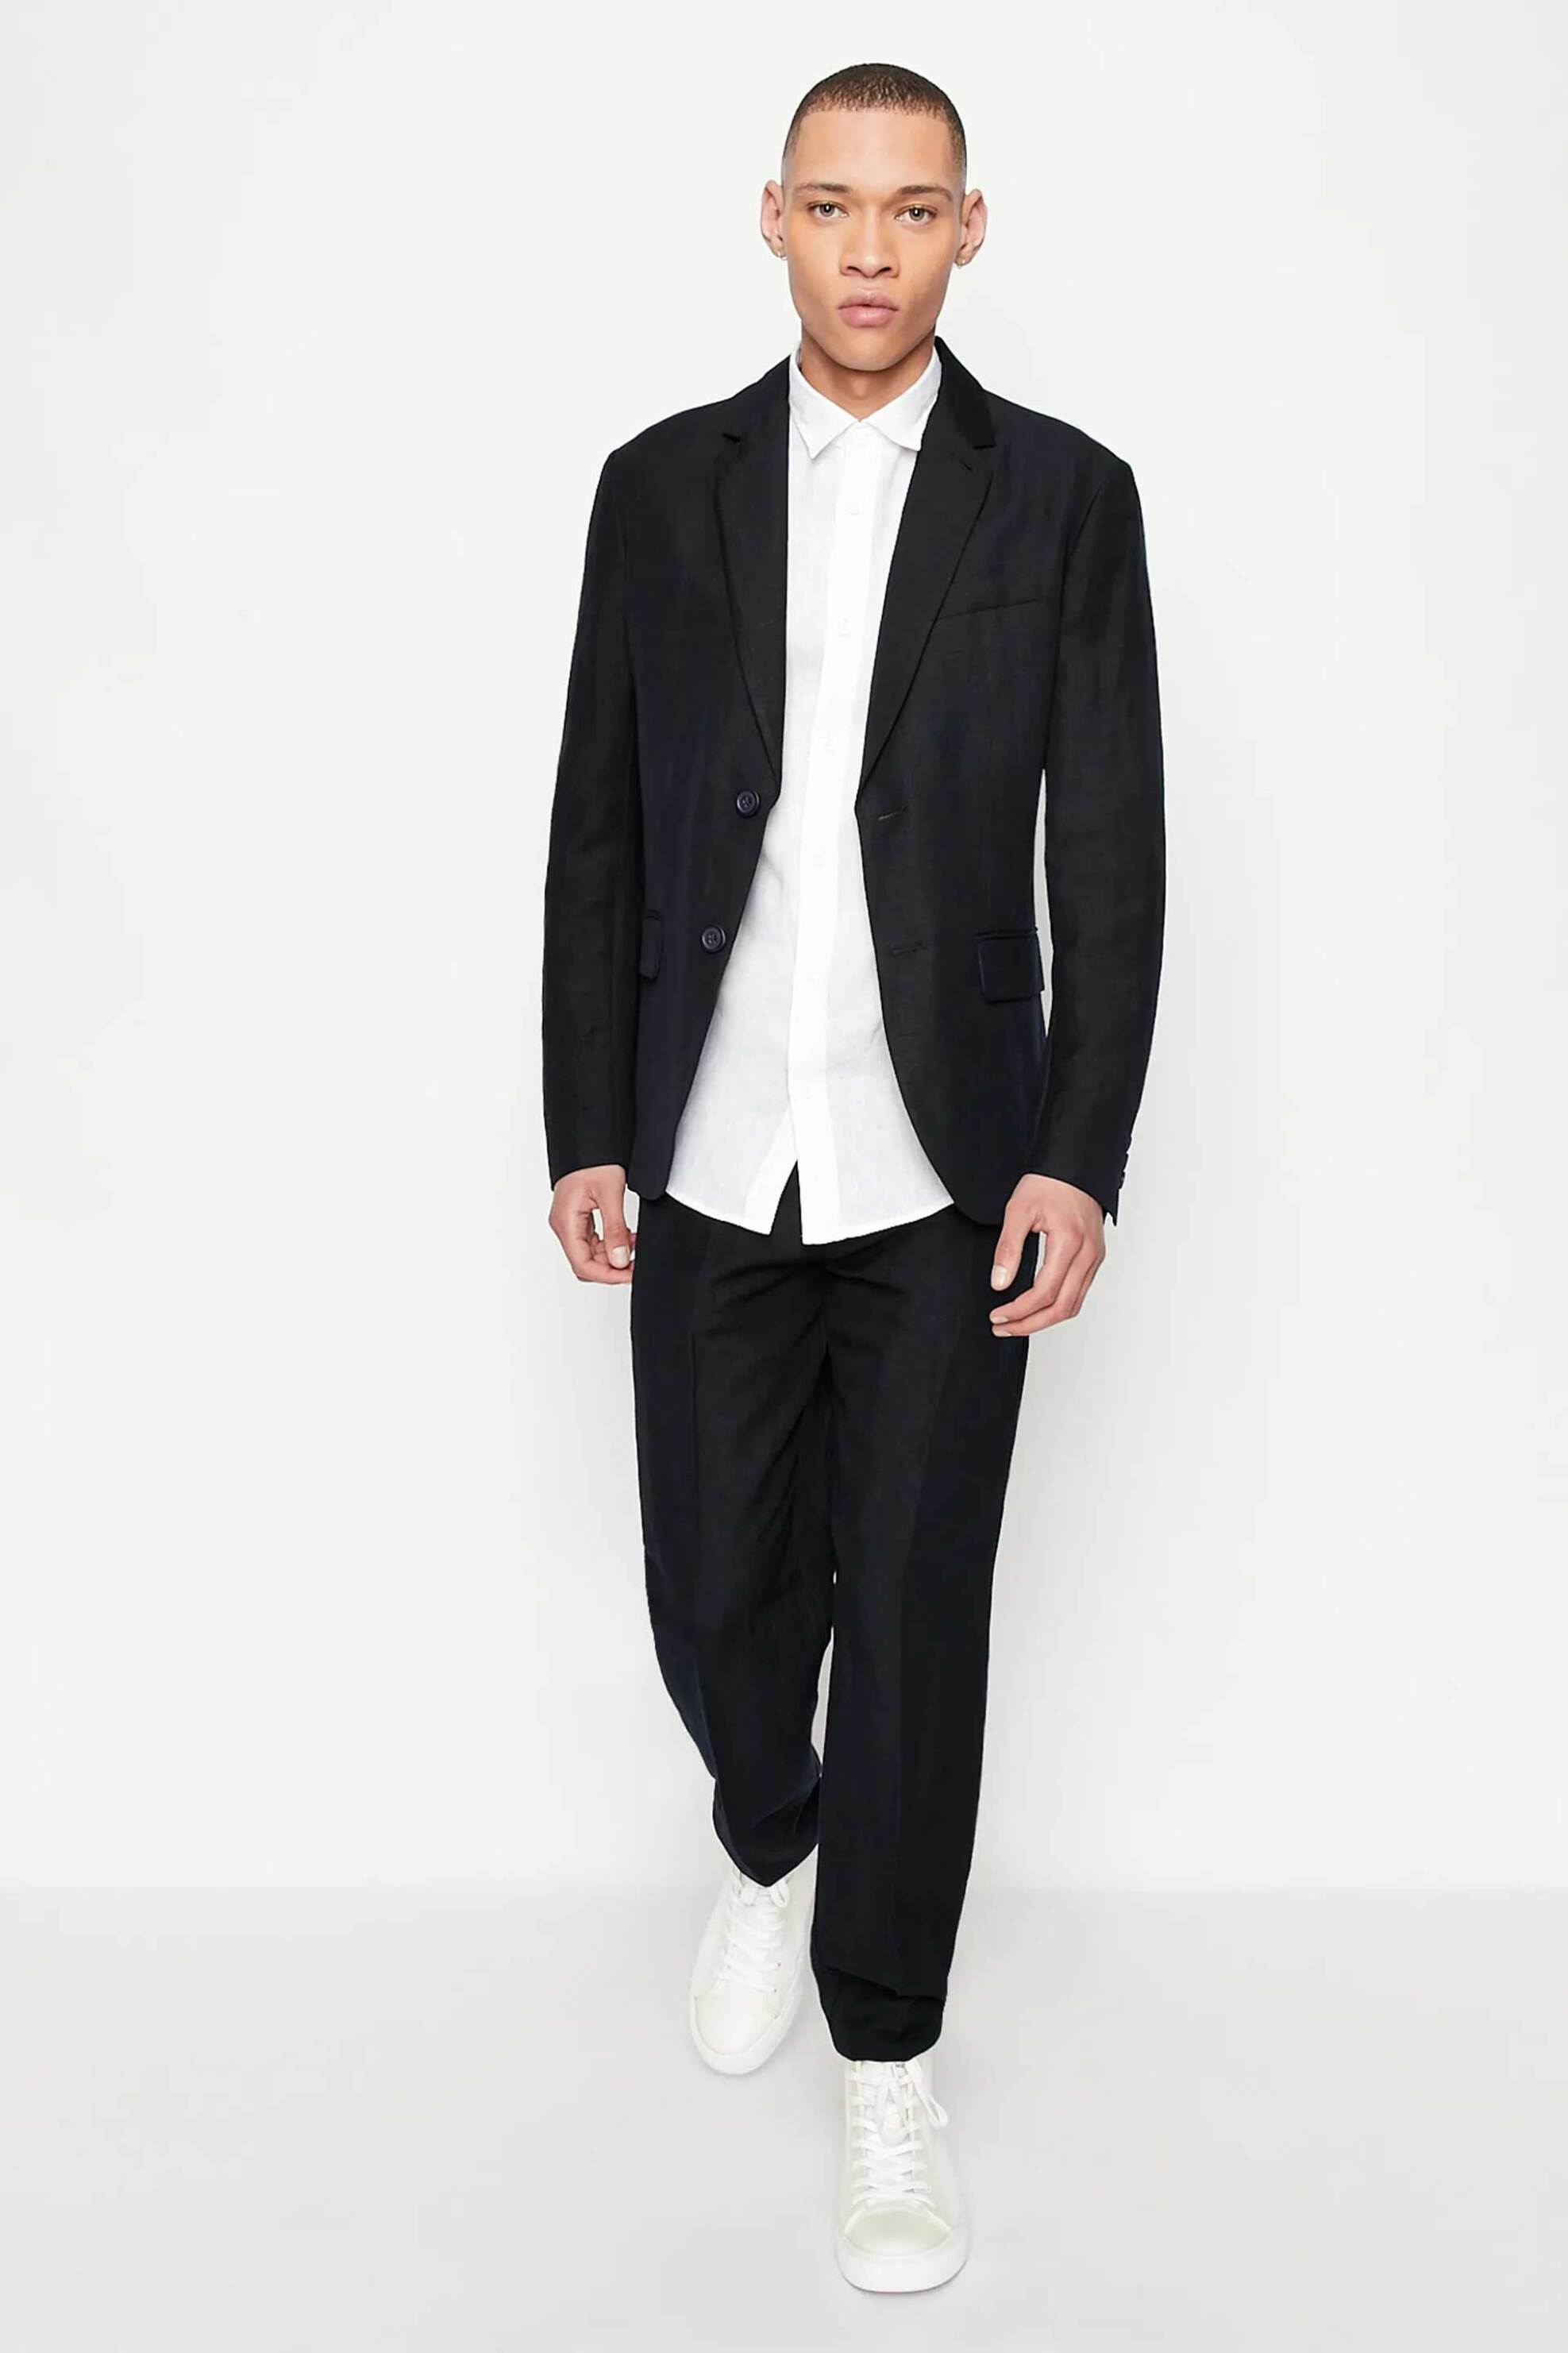 Ανδρική Μόδα > Ανδρικά Ρούχα > Ανδρικά Πουκάμισα > Ανδρικά Πουκάμισα Casual Armani Exchange ανδρικό λινό πουκάμισο με κεντημένο λογότυπο Regular Fit - 8NZC50ZNCFZ Λευκό